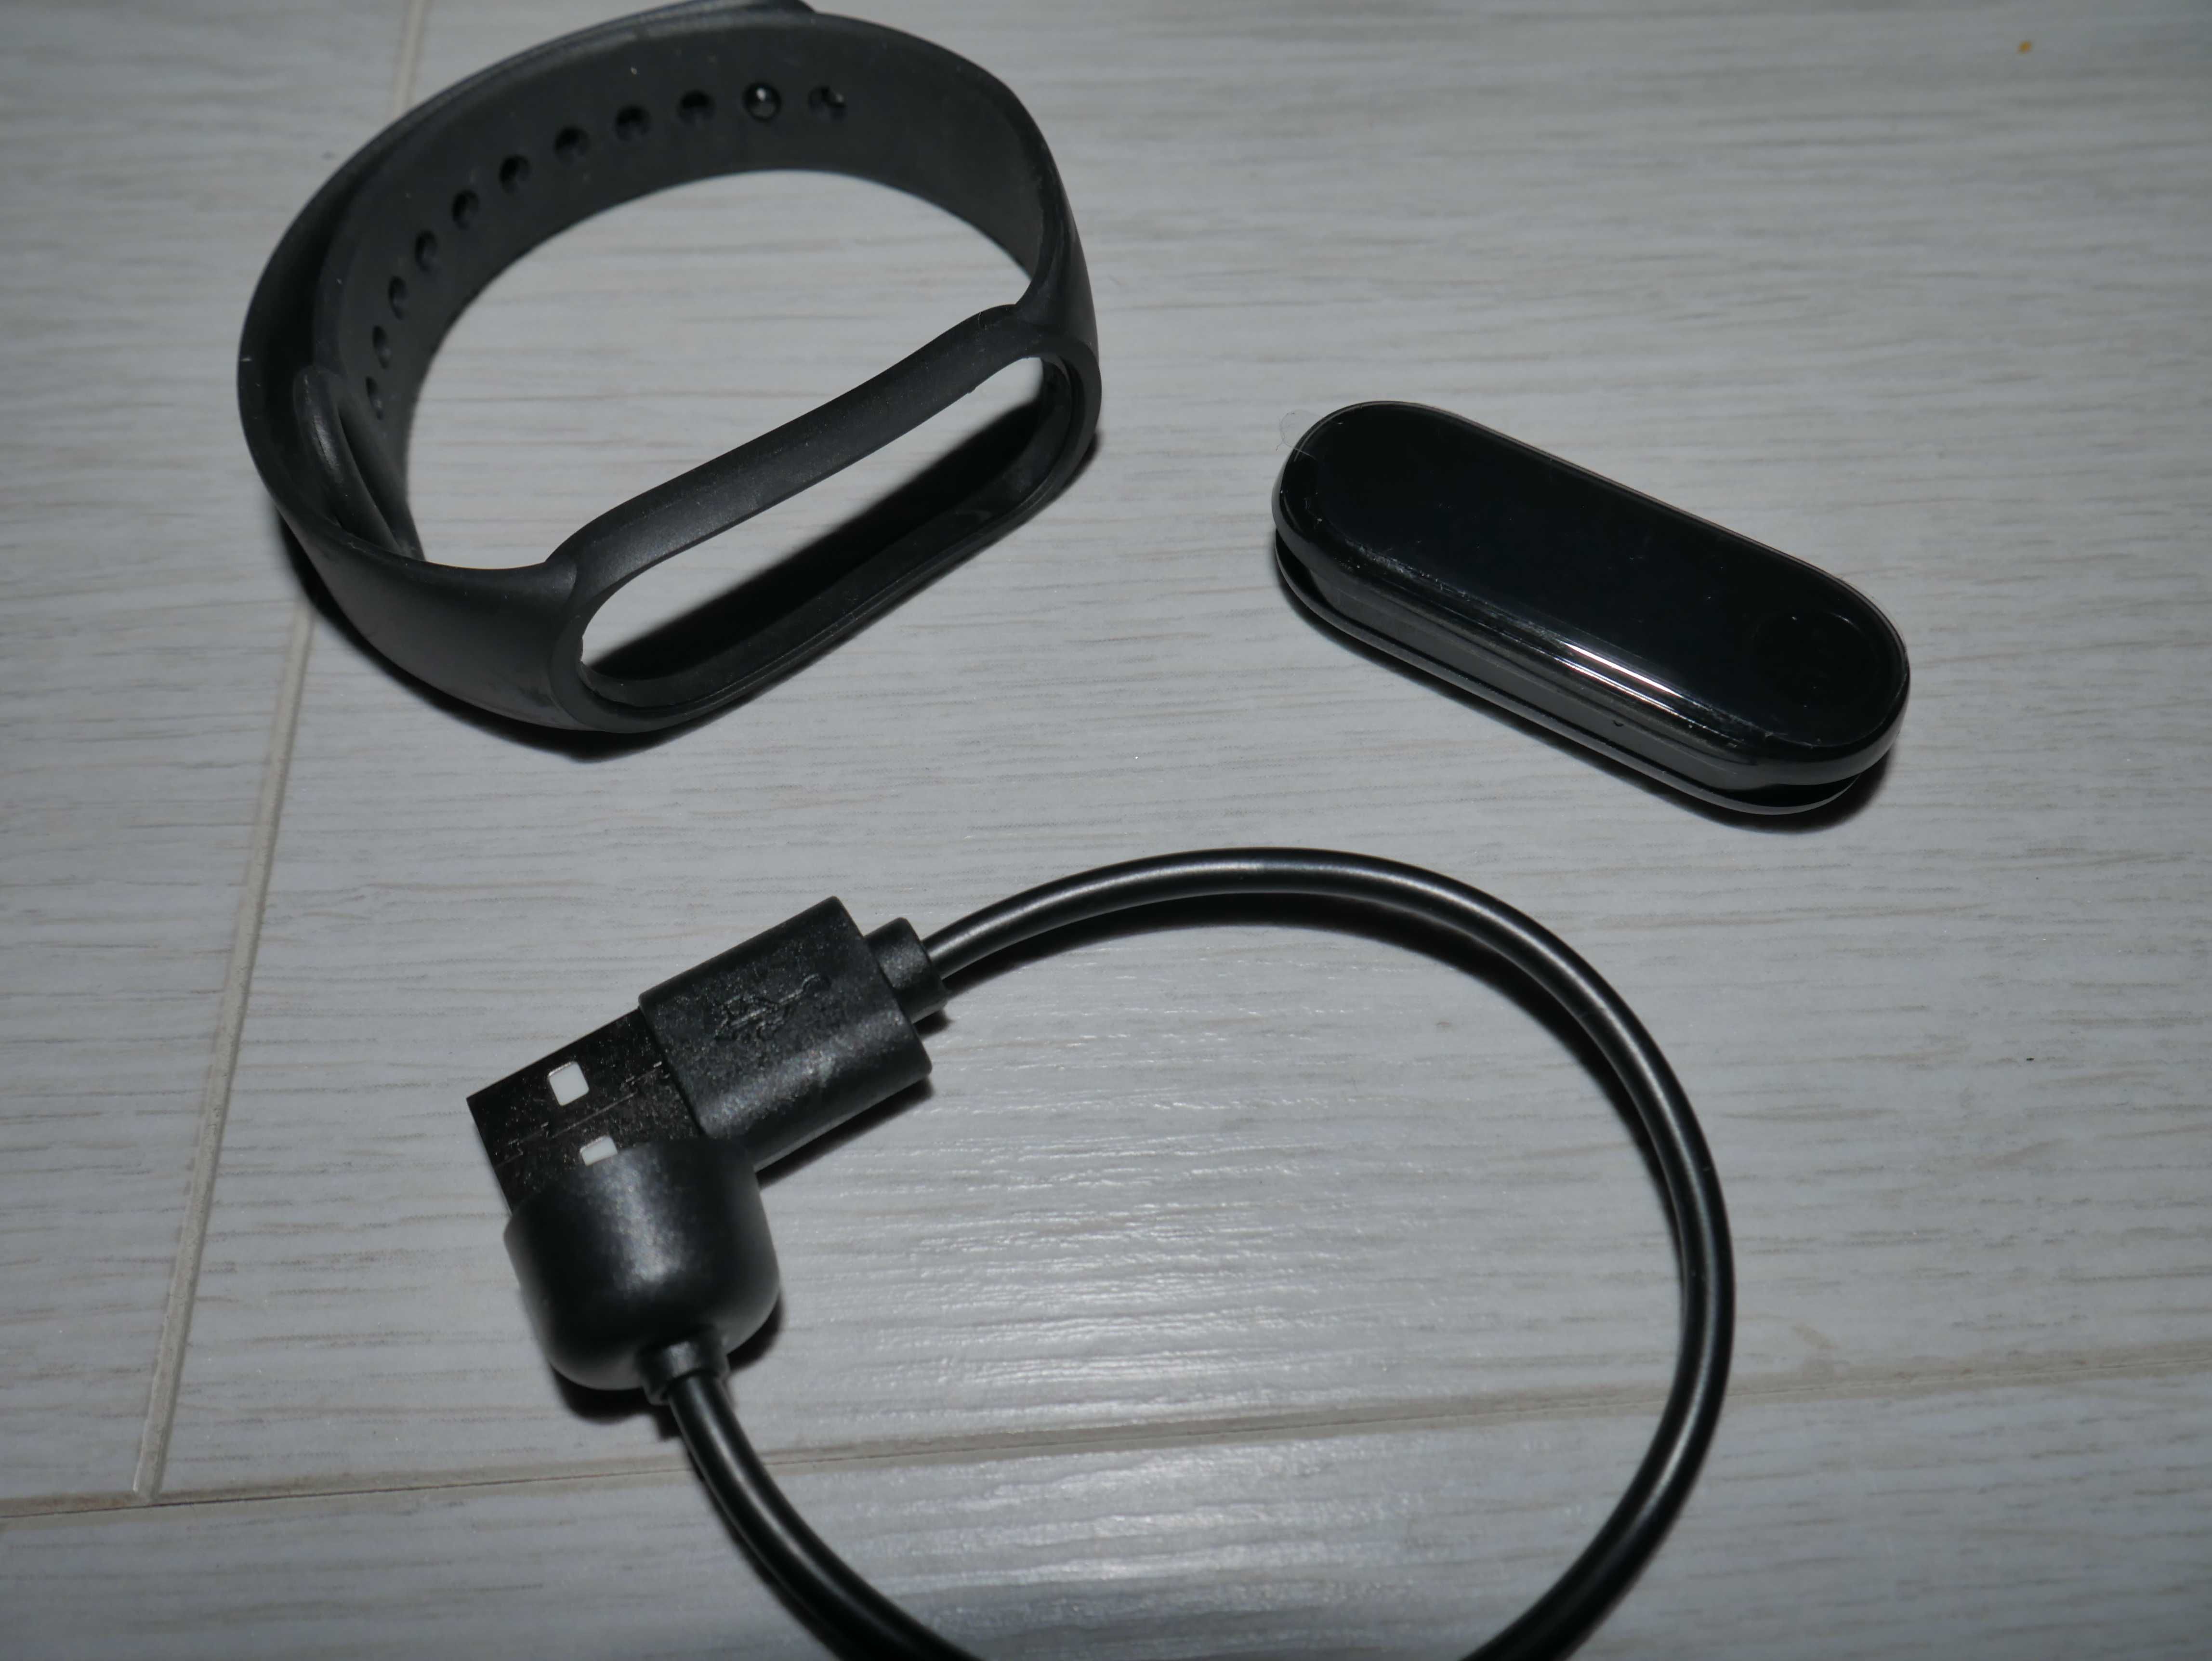 Smartwatch Xiaomi Mi Band 6 czarny